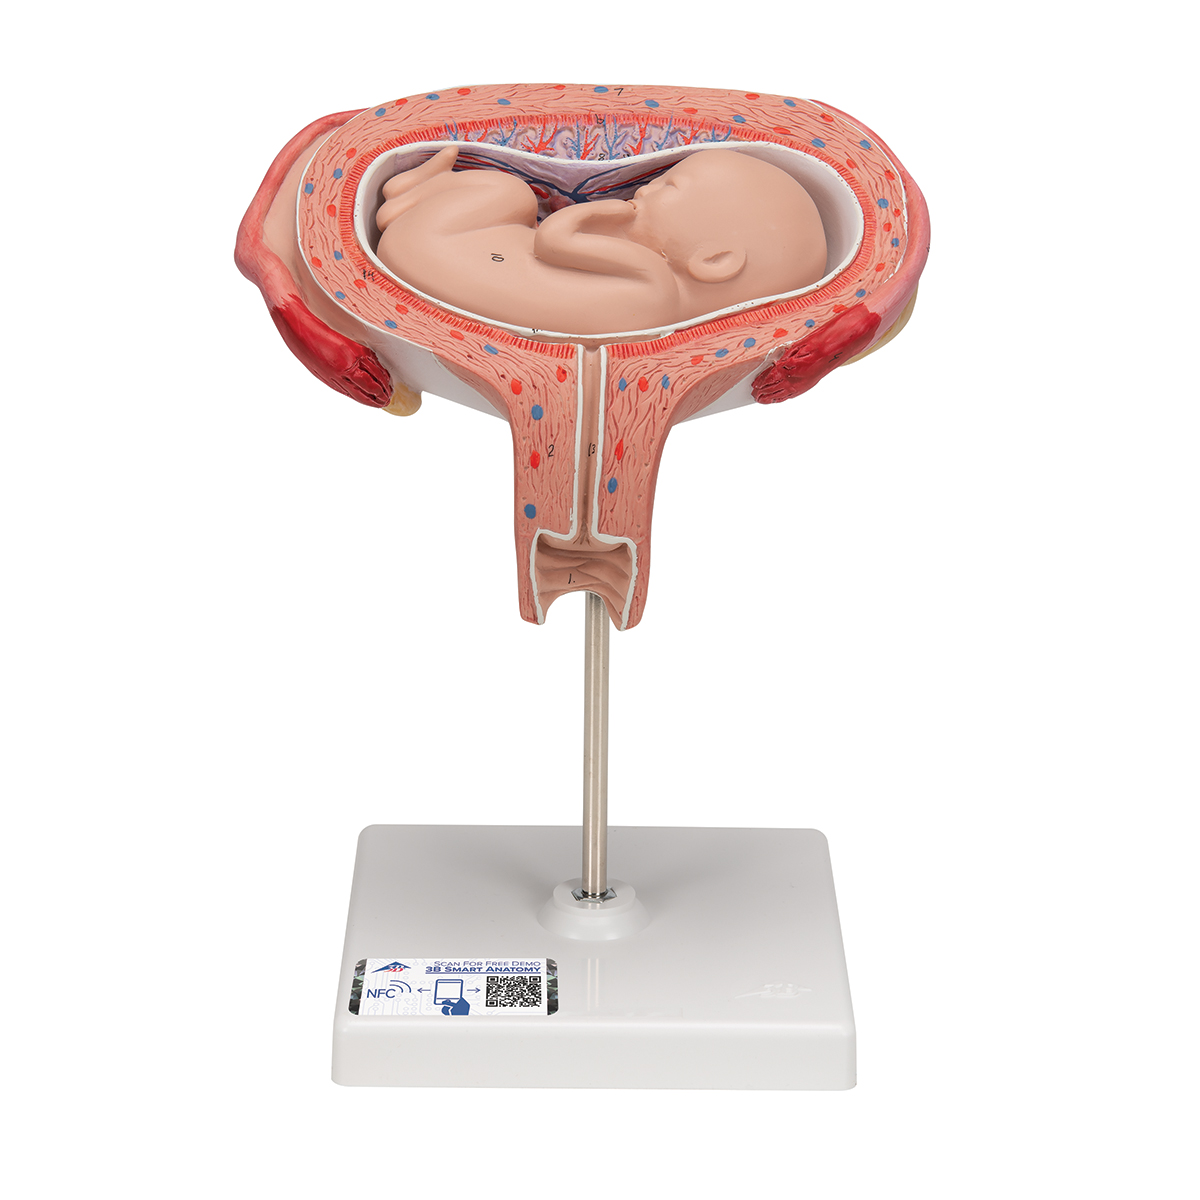 Fetus Modell, 5. Monat, Rückenlage - 3B Smart Anatomy, Bestellnummer 1000327, L10/6, 3B Scientific